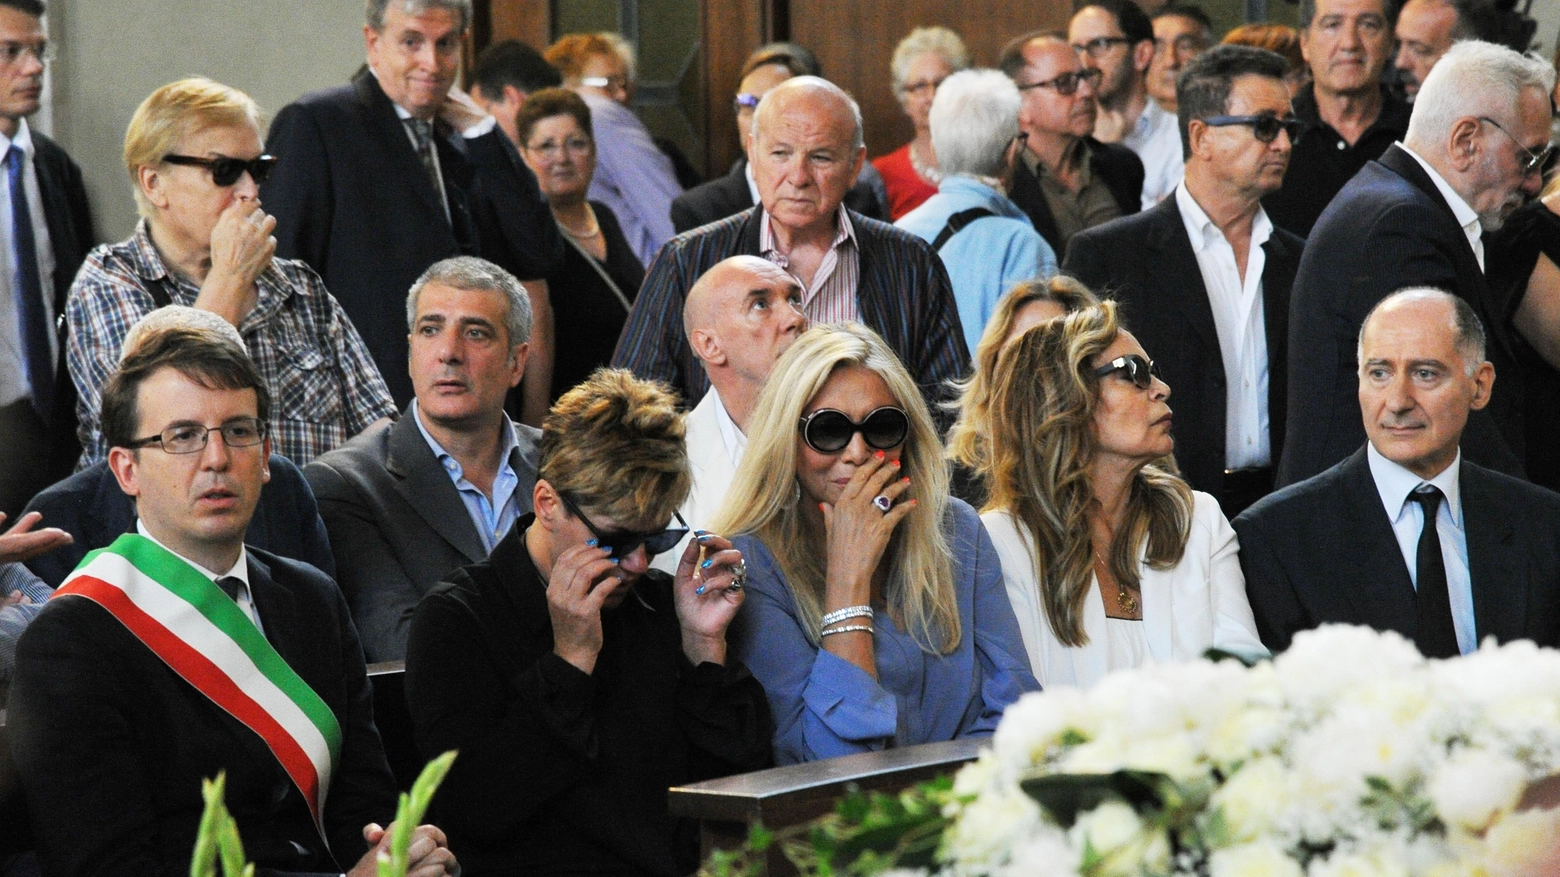 Funerale Paolo Limiti, Mara Venier in lacrime